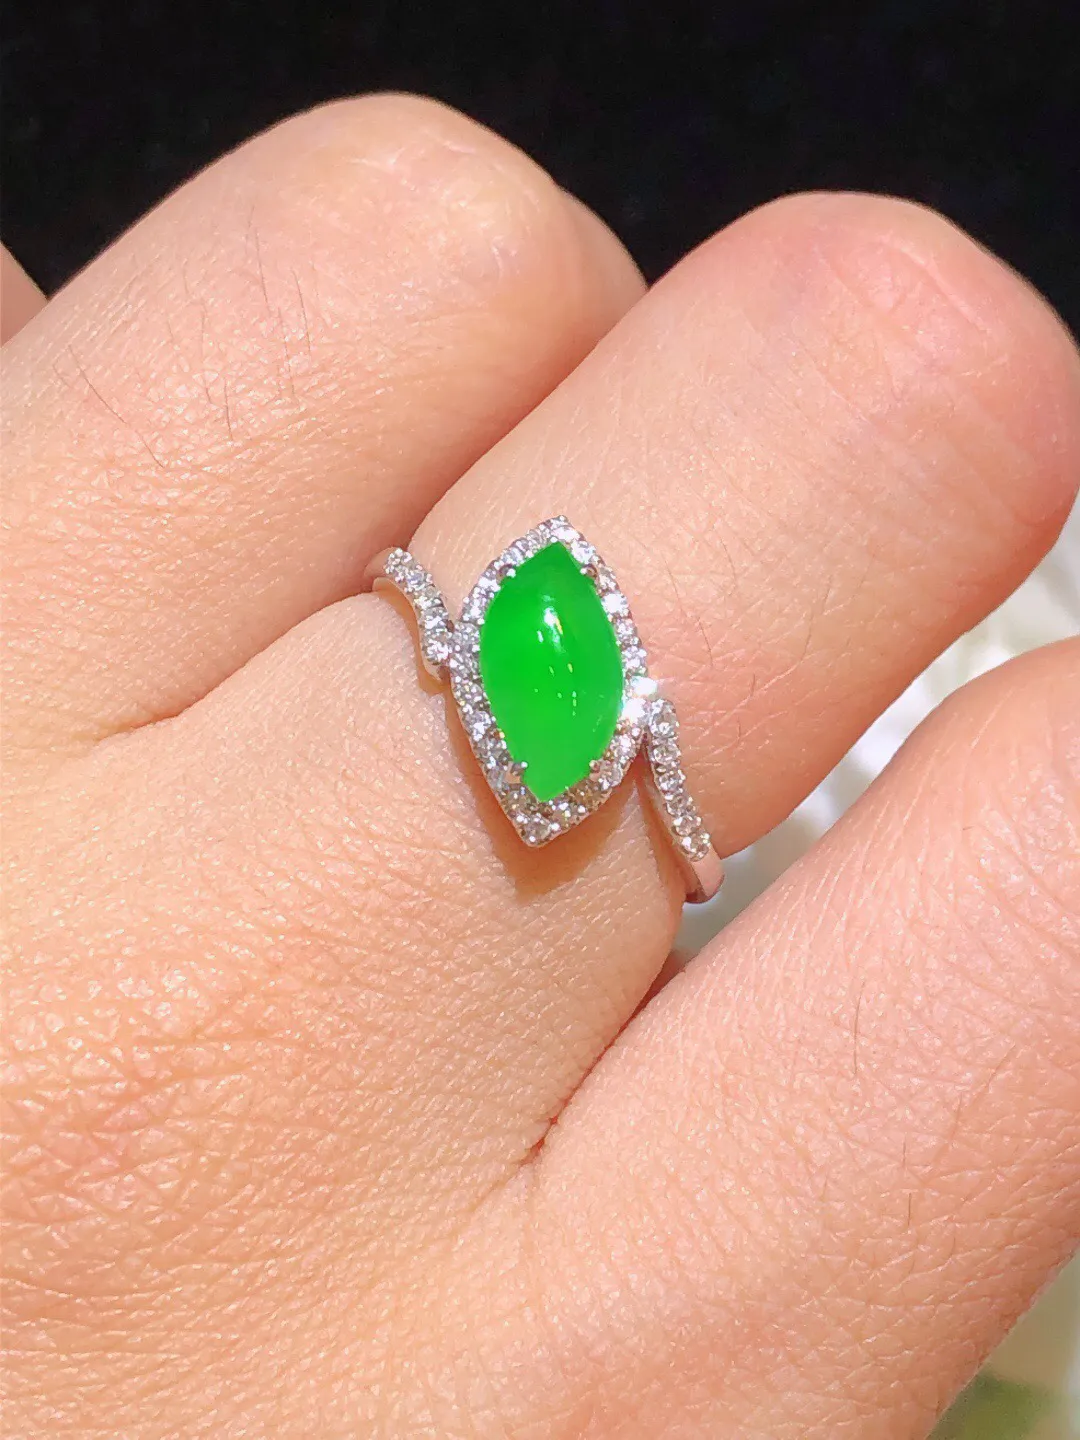 翡翠冰绿随形戒指 雕工精湛 颜色清爽 冰透水润